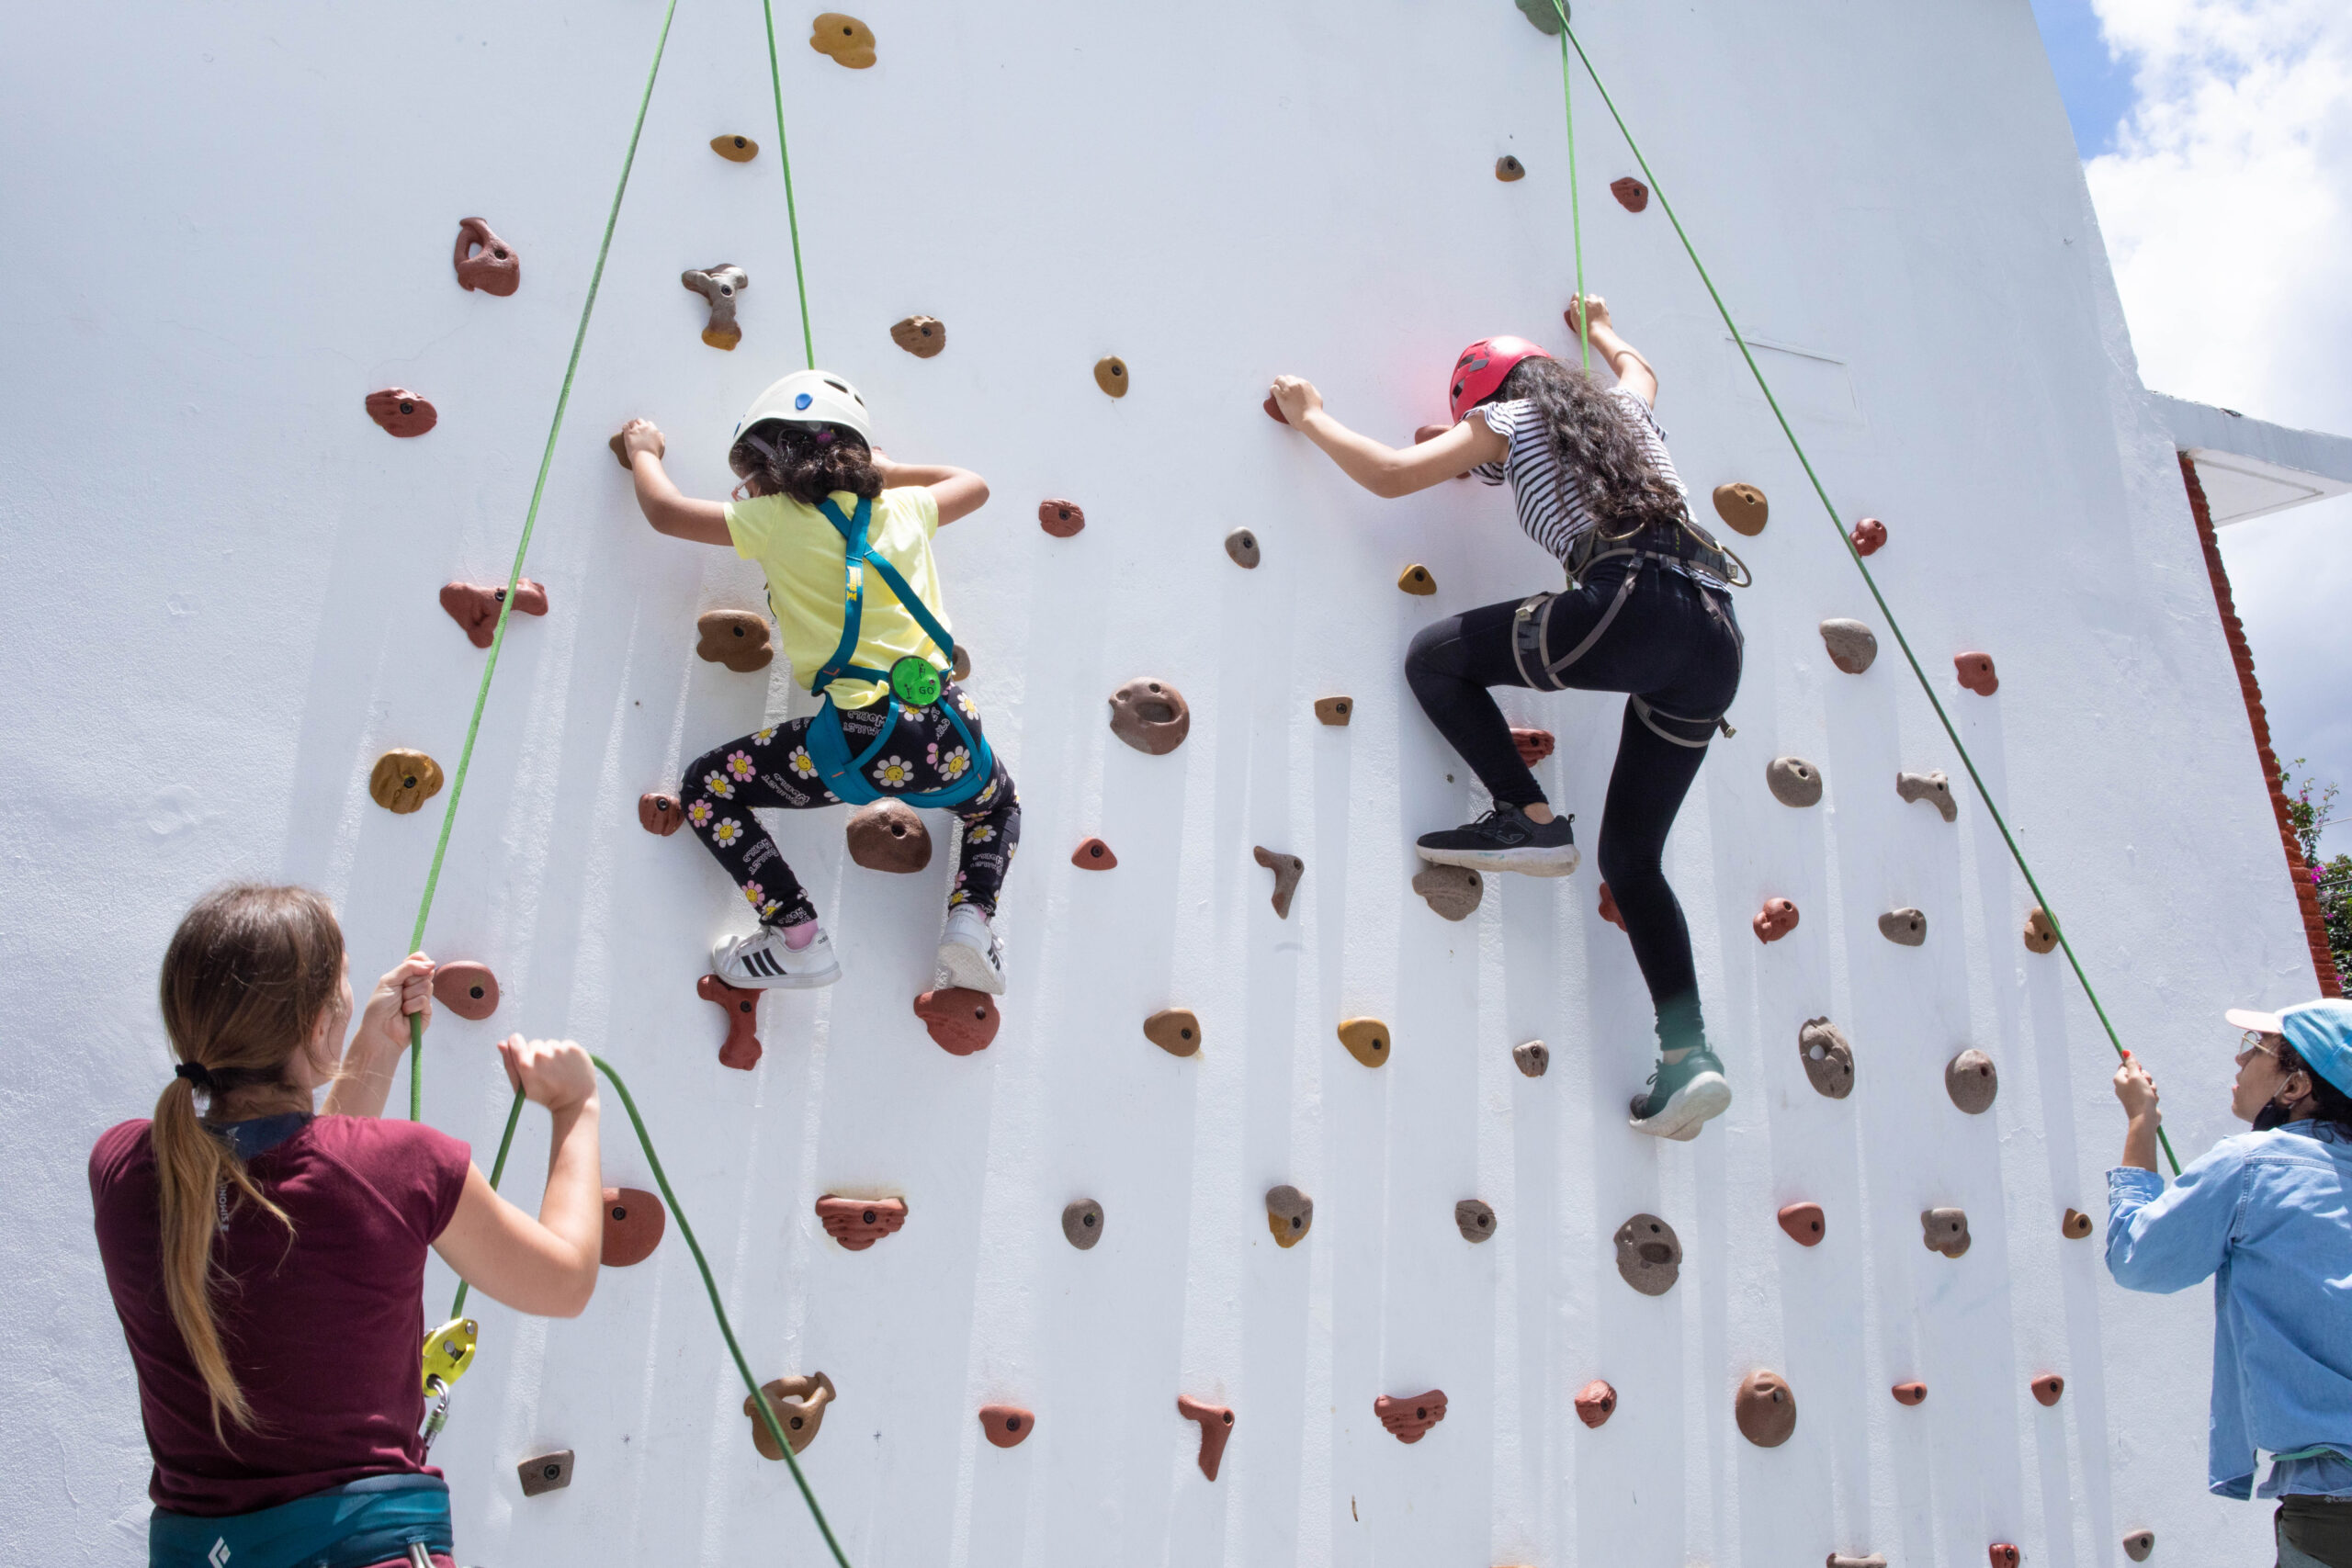 Clases de escalada para niñas y niños en beUp Burgos